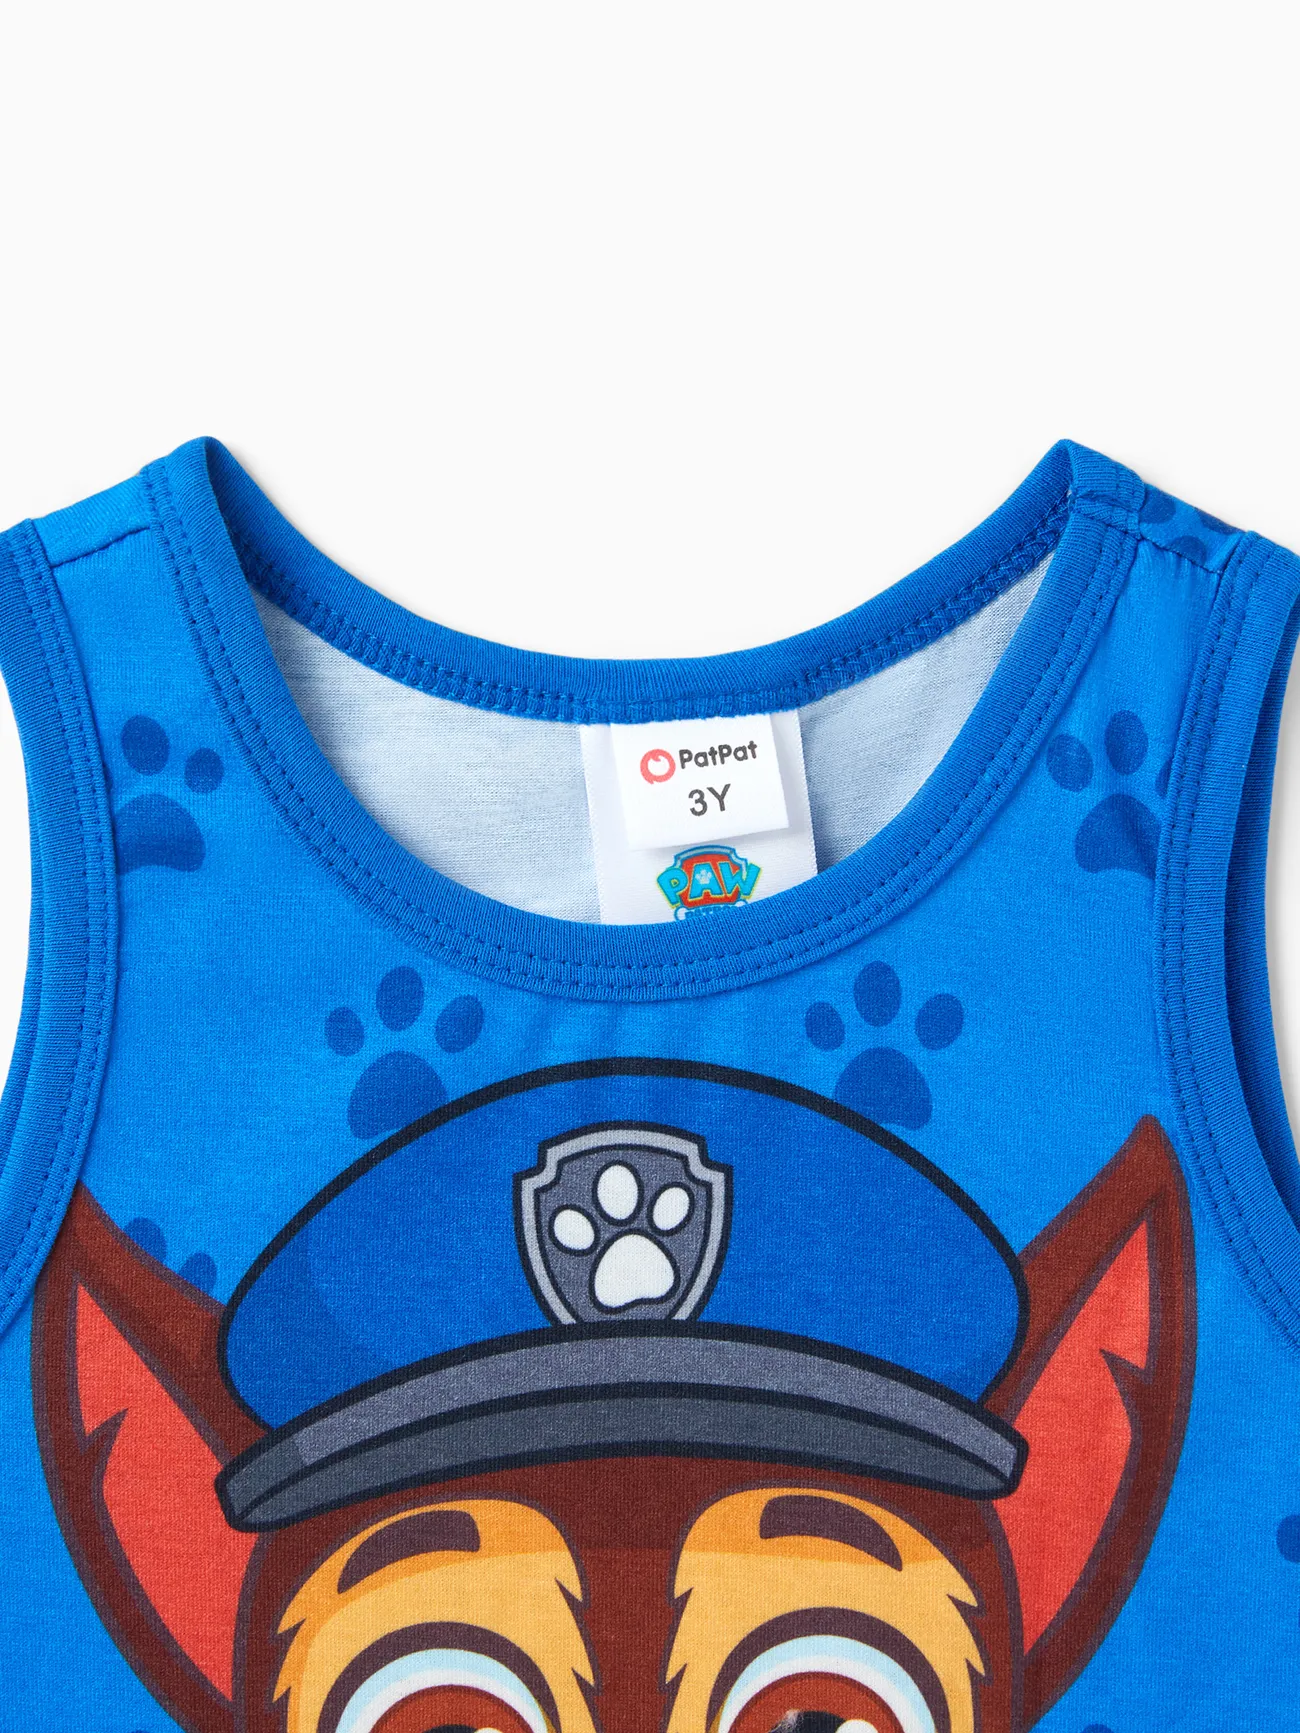 PAW Patrol Toddler Boy Character Print Naia™ Tank Top Blue big image 1